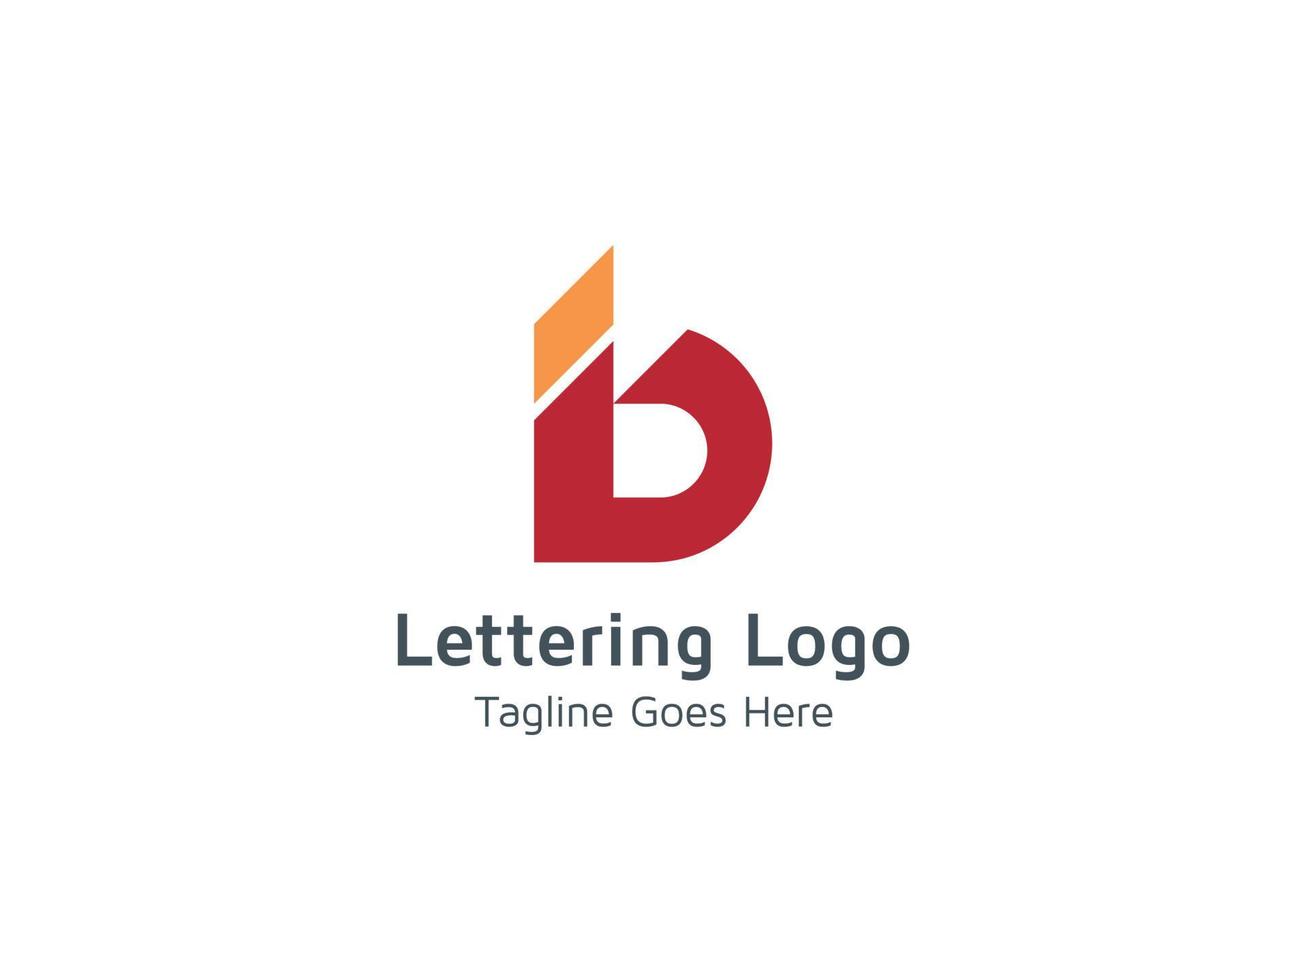 lettering creativo b alfabeto logo design per affari e società pro vettore